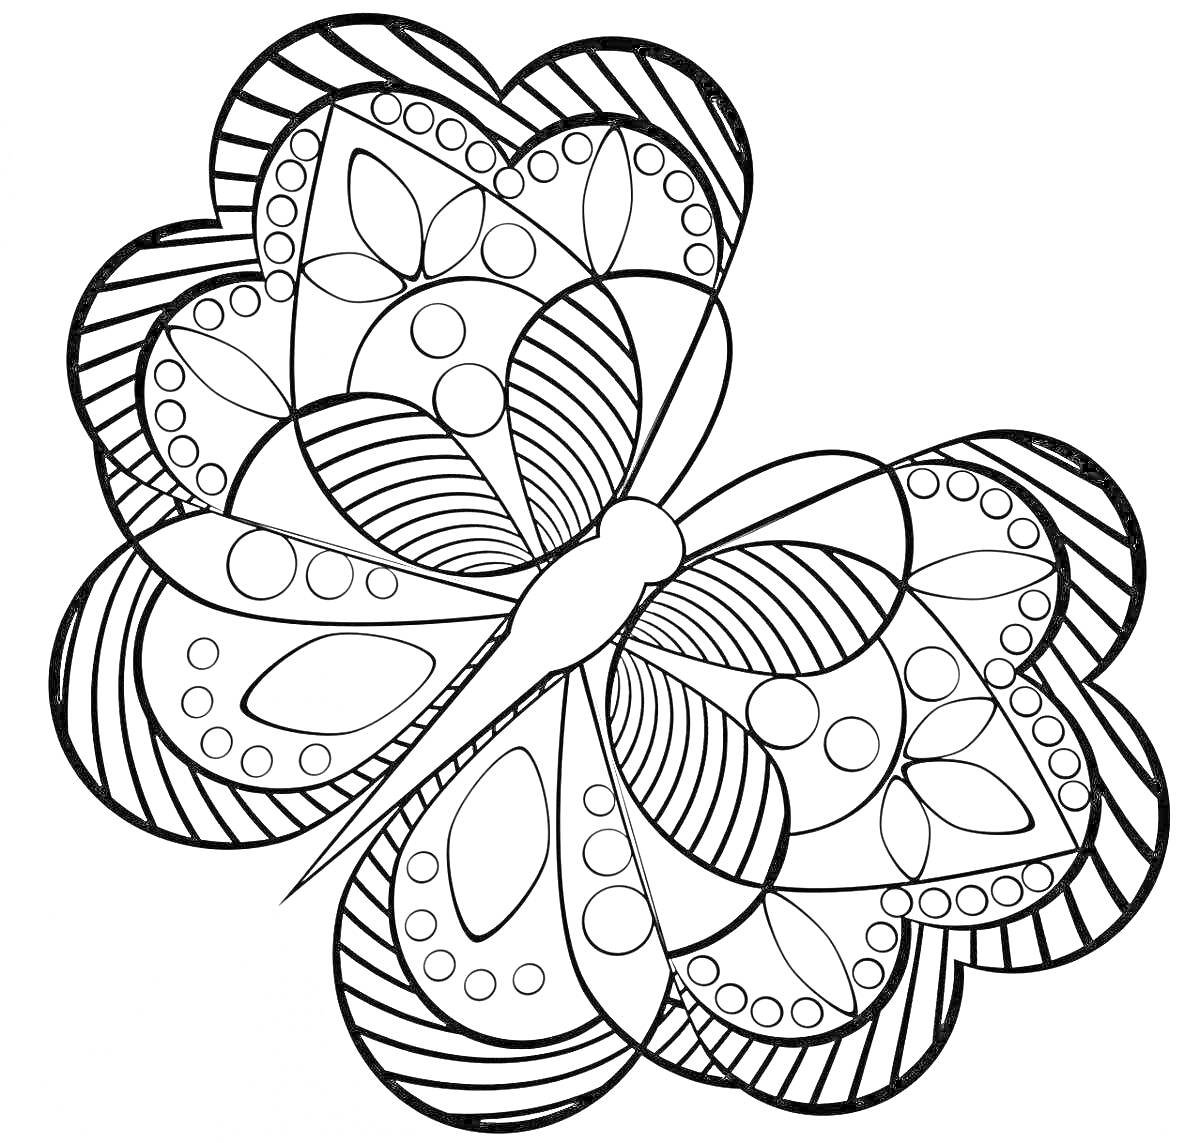 Раскраска Бабочка с узорами, кругами и листьями на крыльях